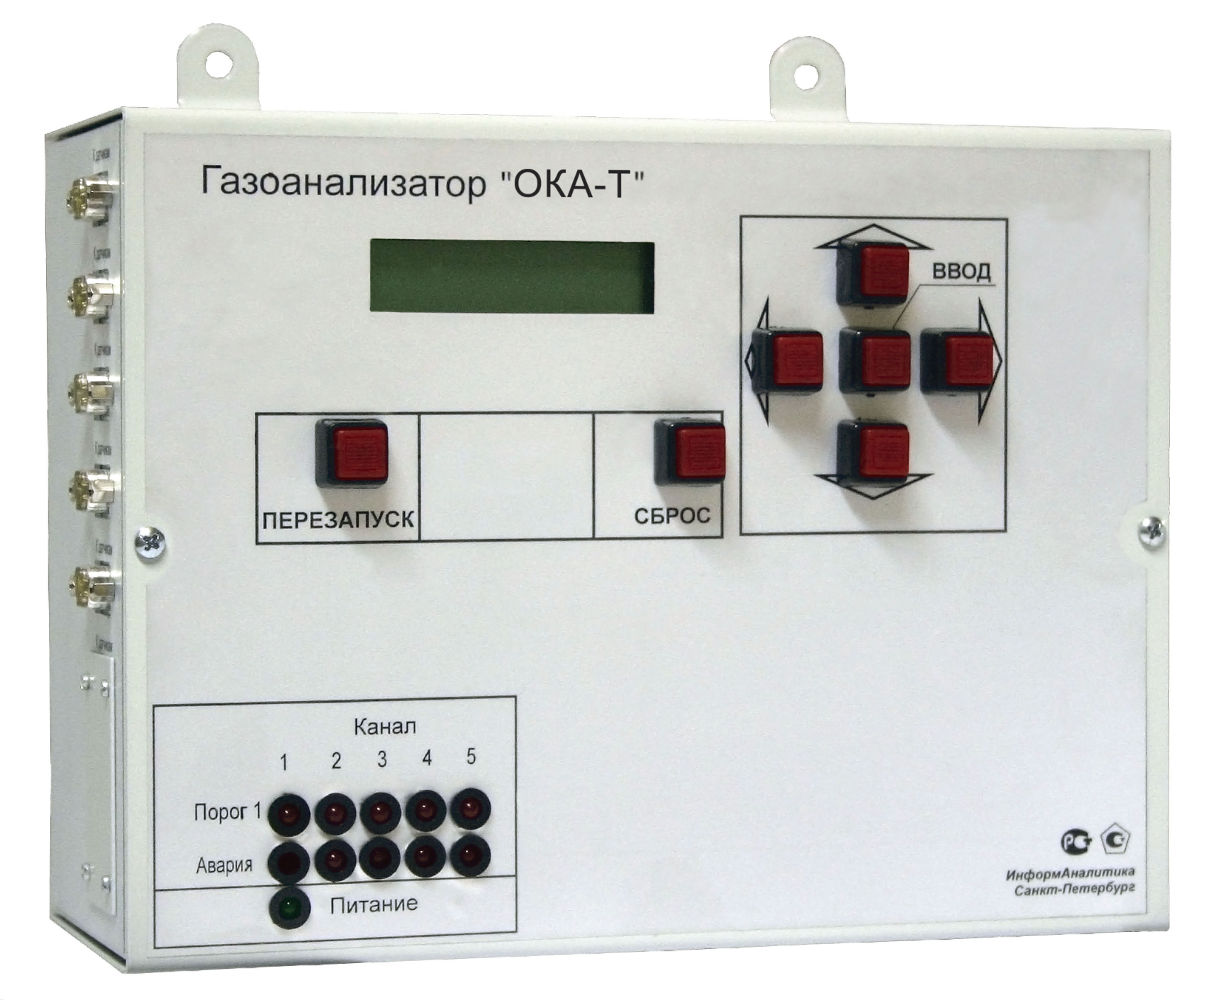 Газоанализаторы хлористого водорода (паров соляной кислоты) с цифровой индикацией."ОКА-Т-HCl"